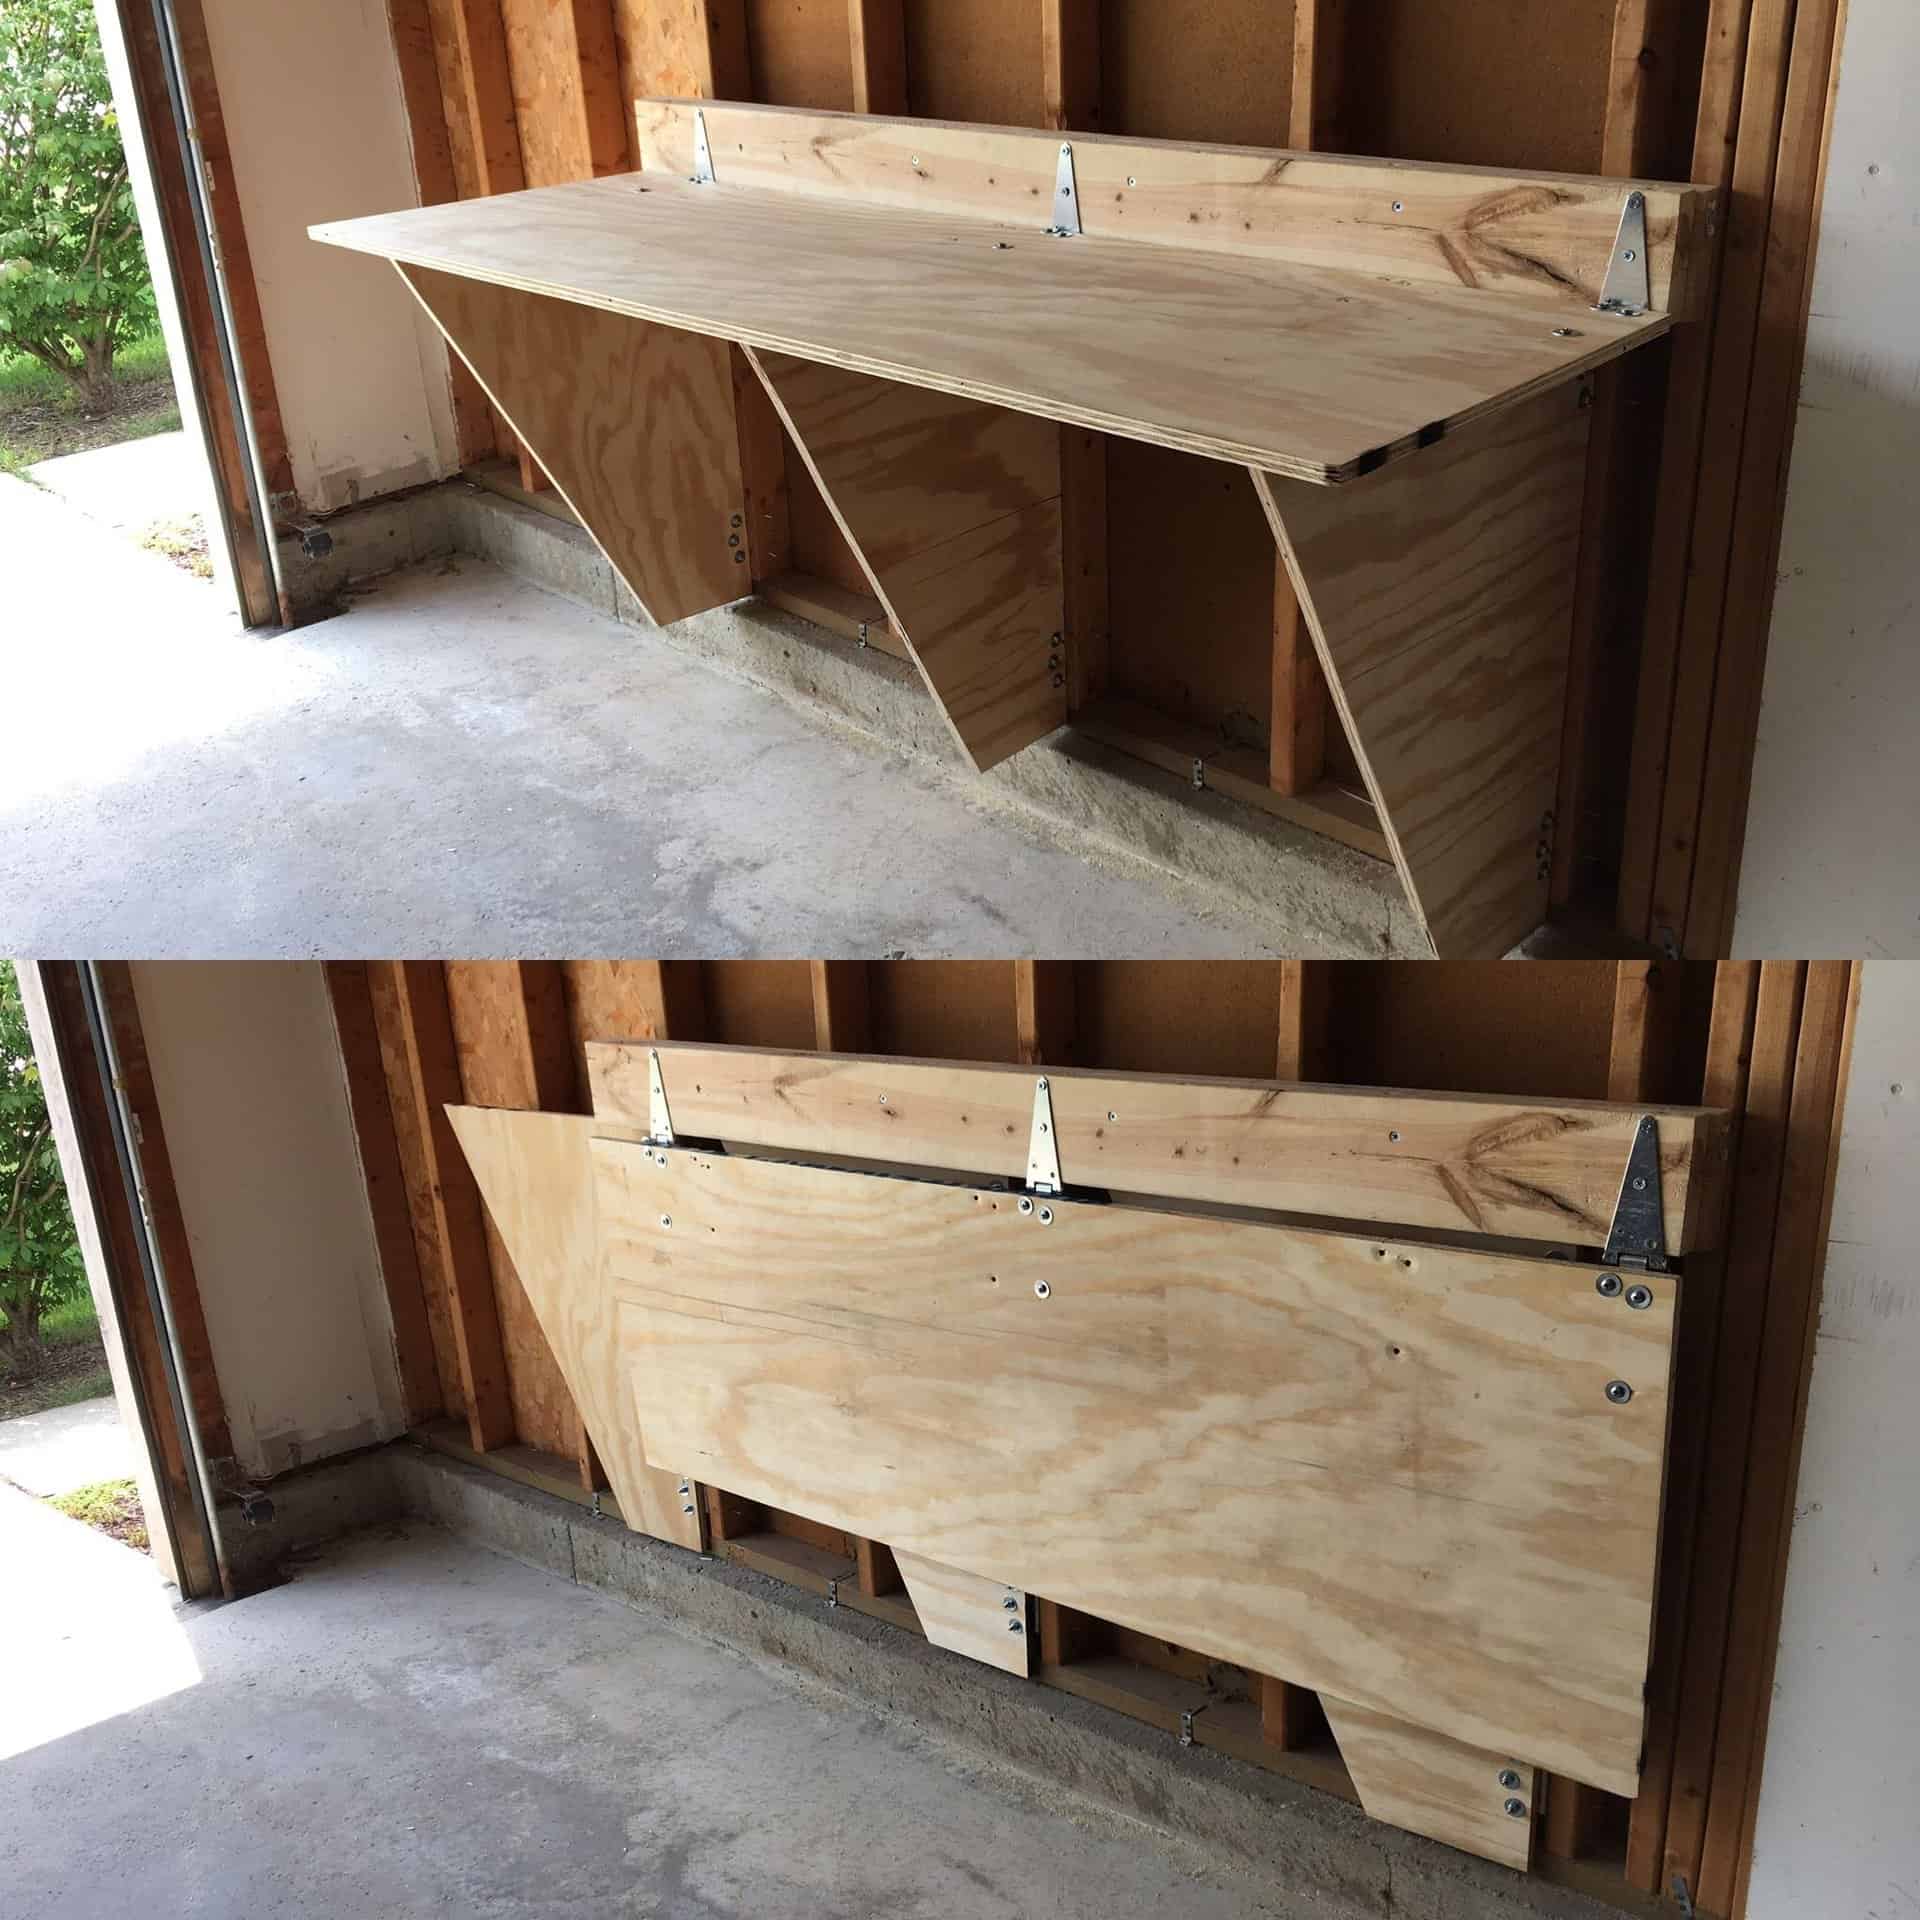 Wall-Mounted Folding Kitchen Storage Bench Idea